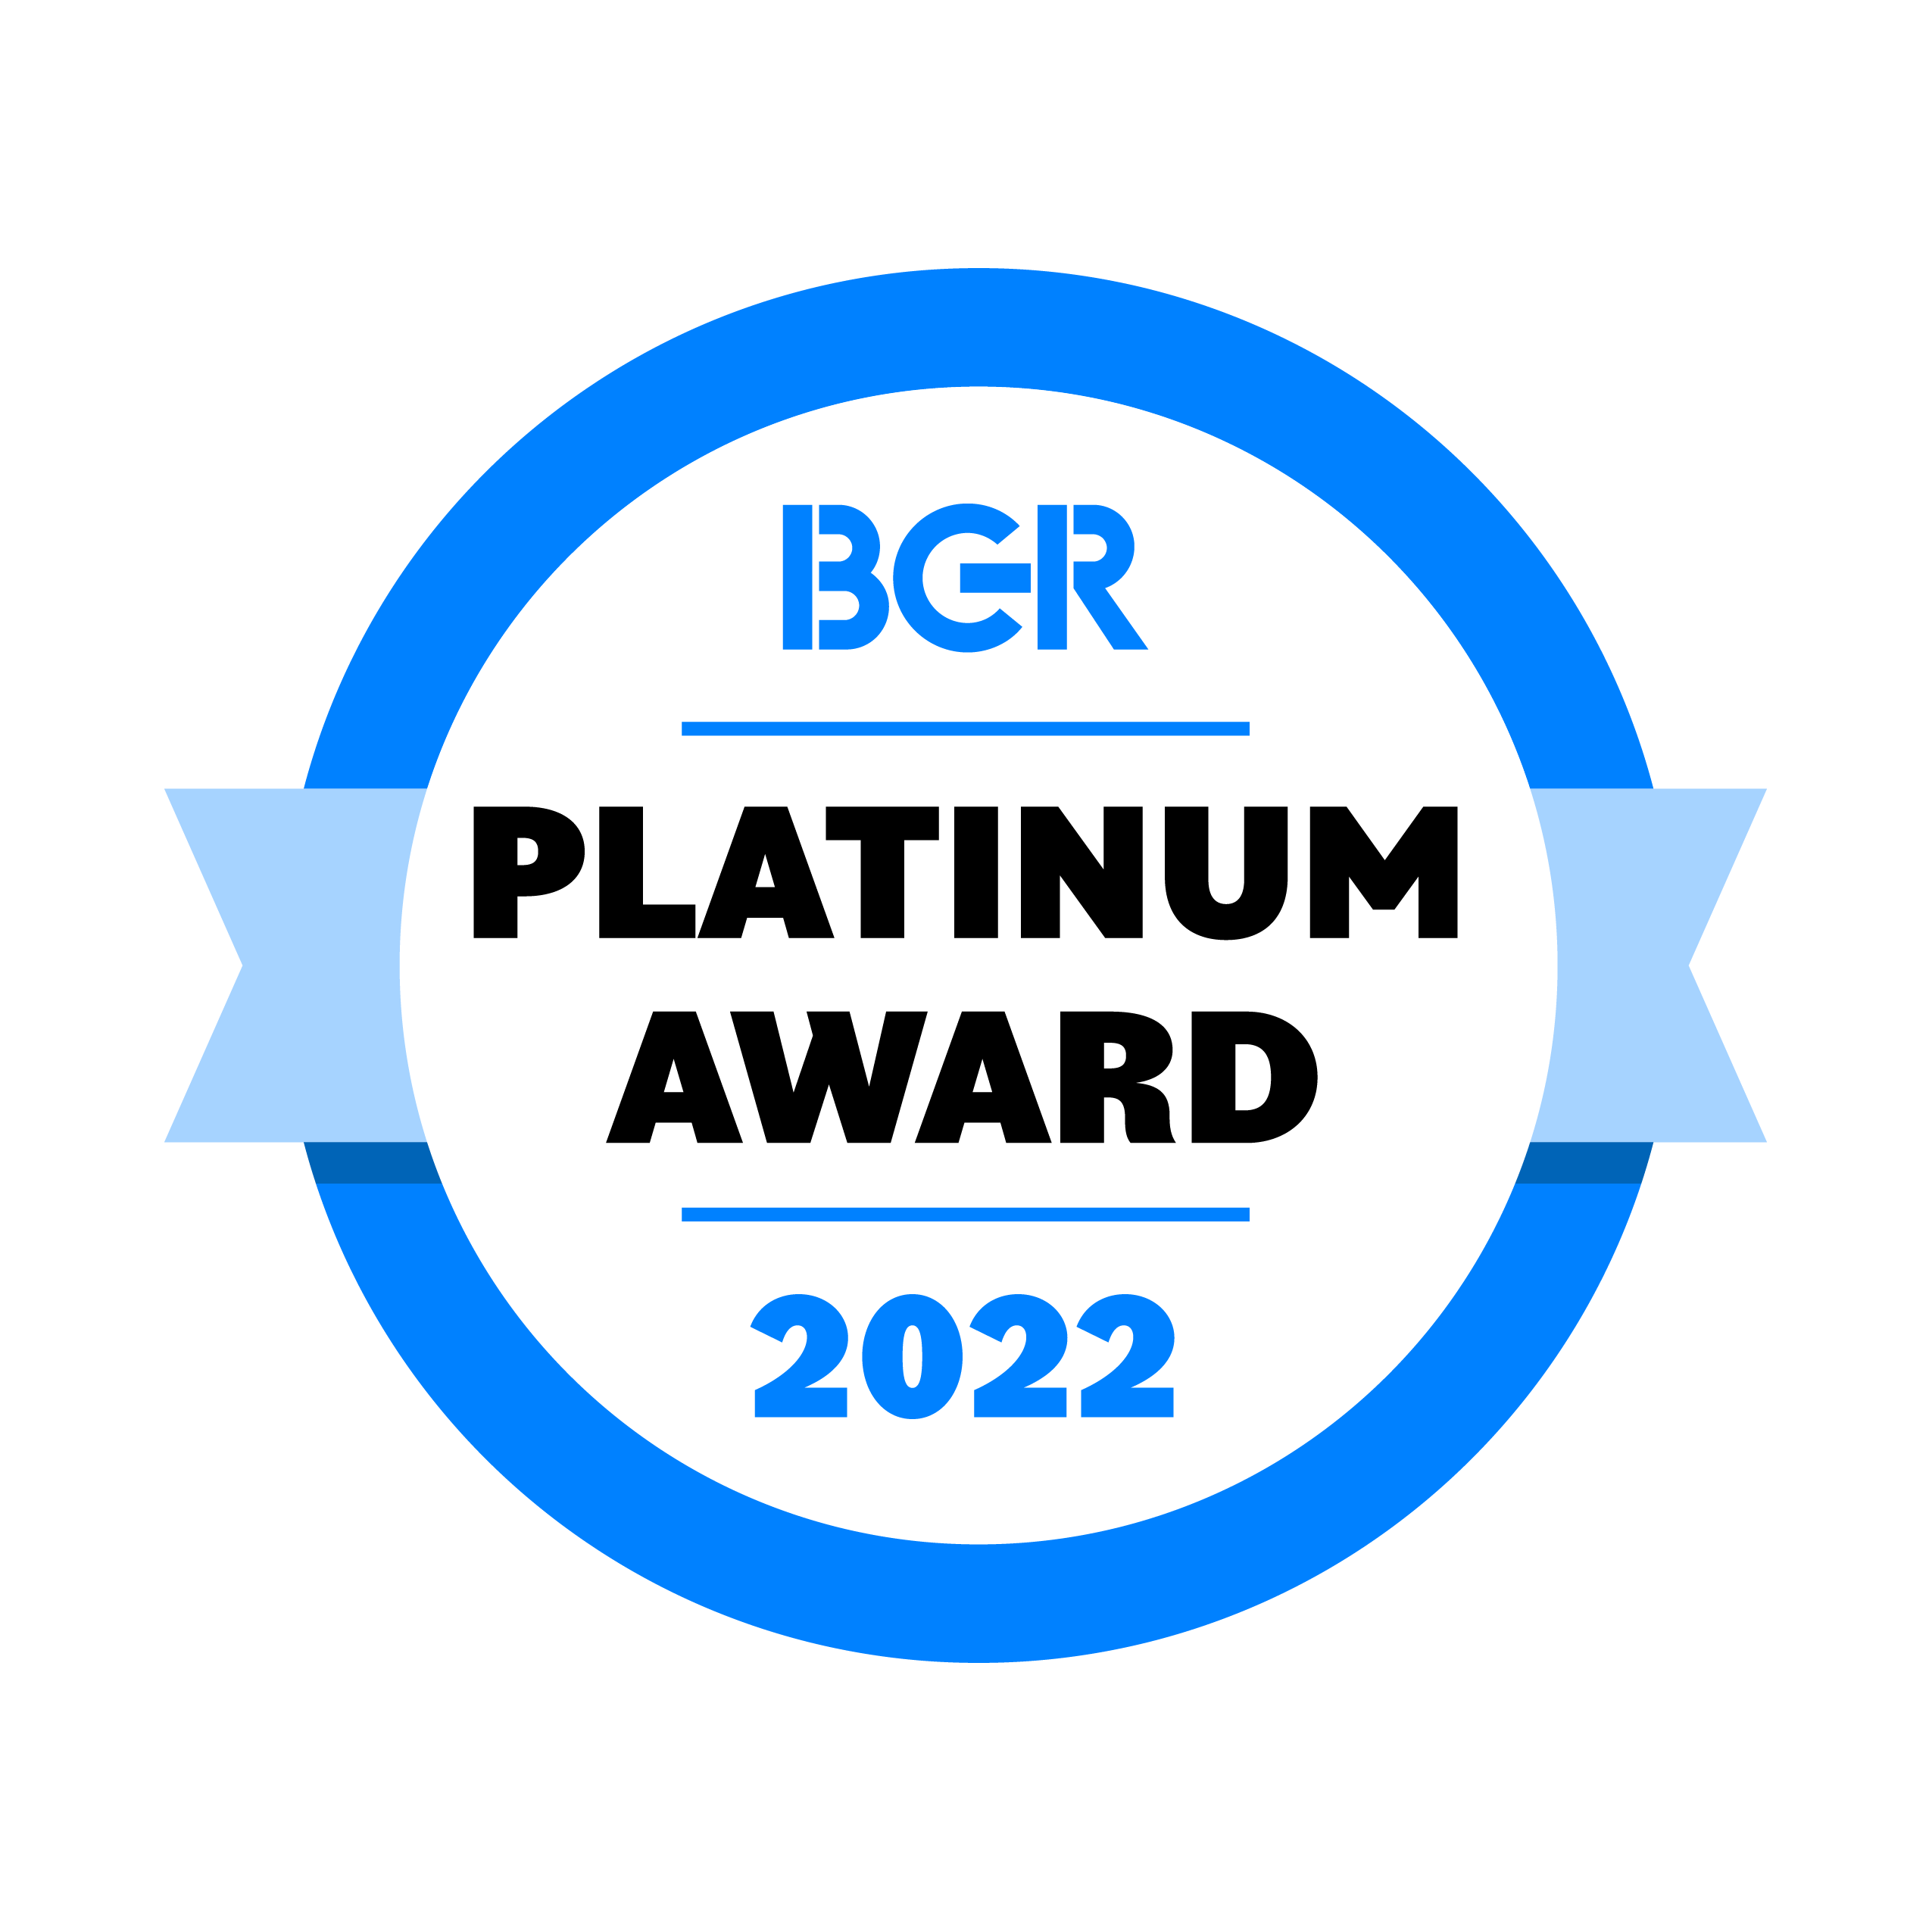 BGR Platinum Award 2022